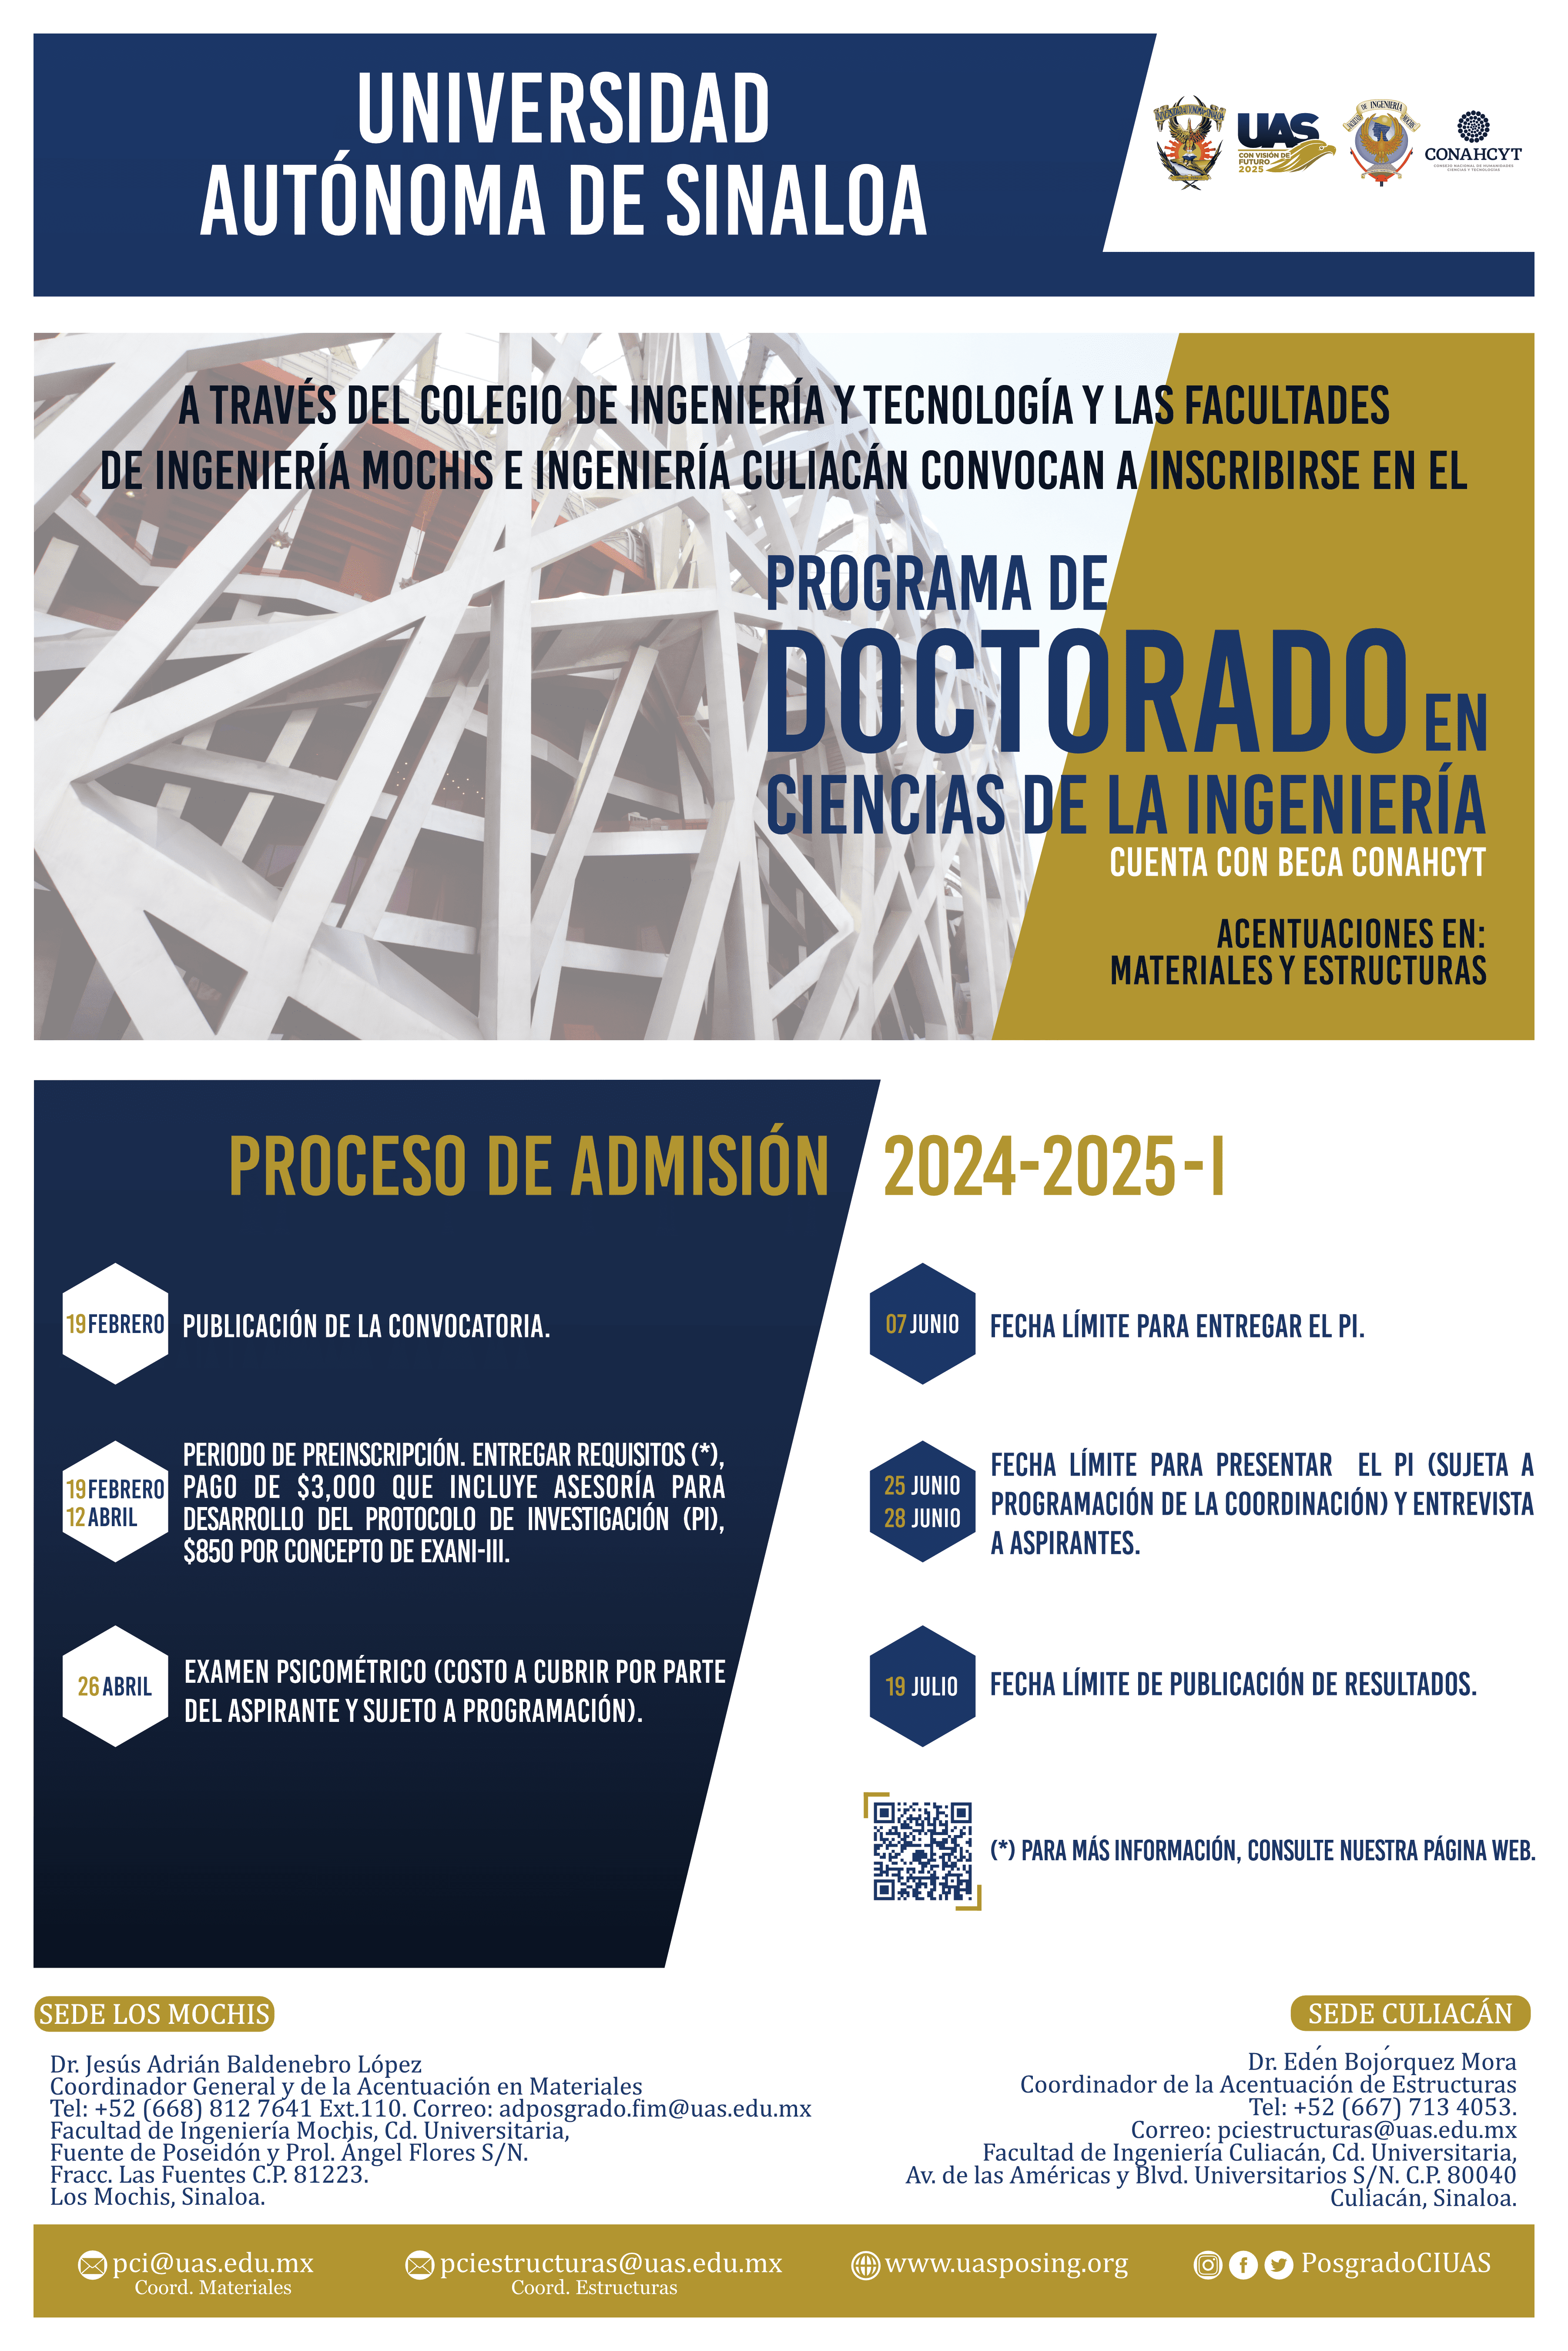 Poster - Convocatoria 2021-2022-1 Doctorado en Ciencias de la Ingeniería